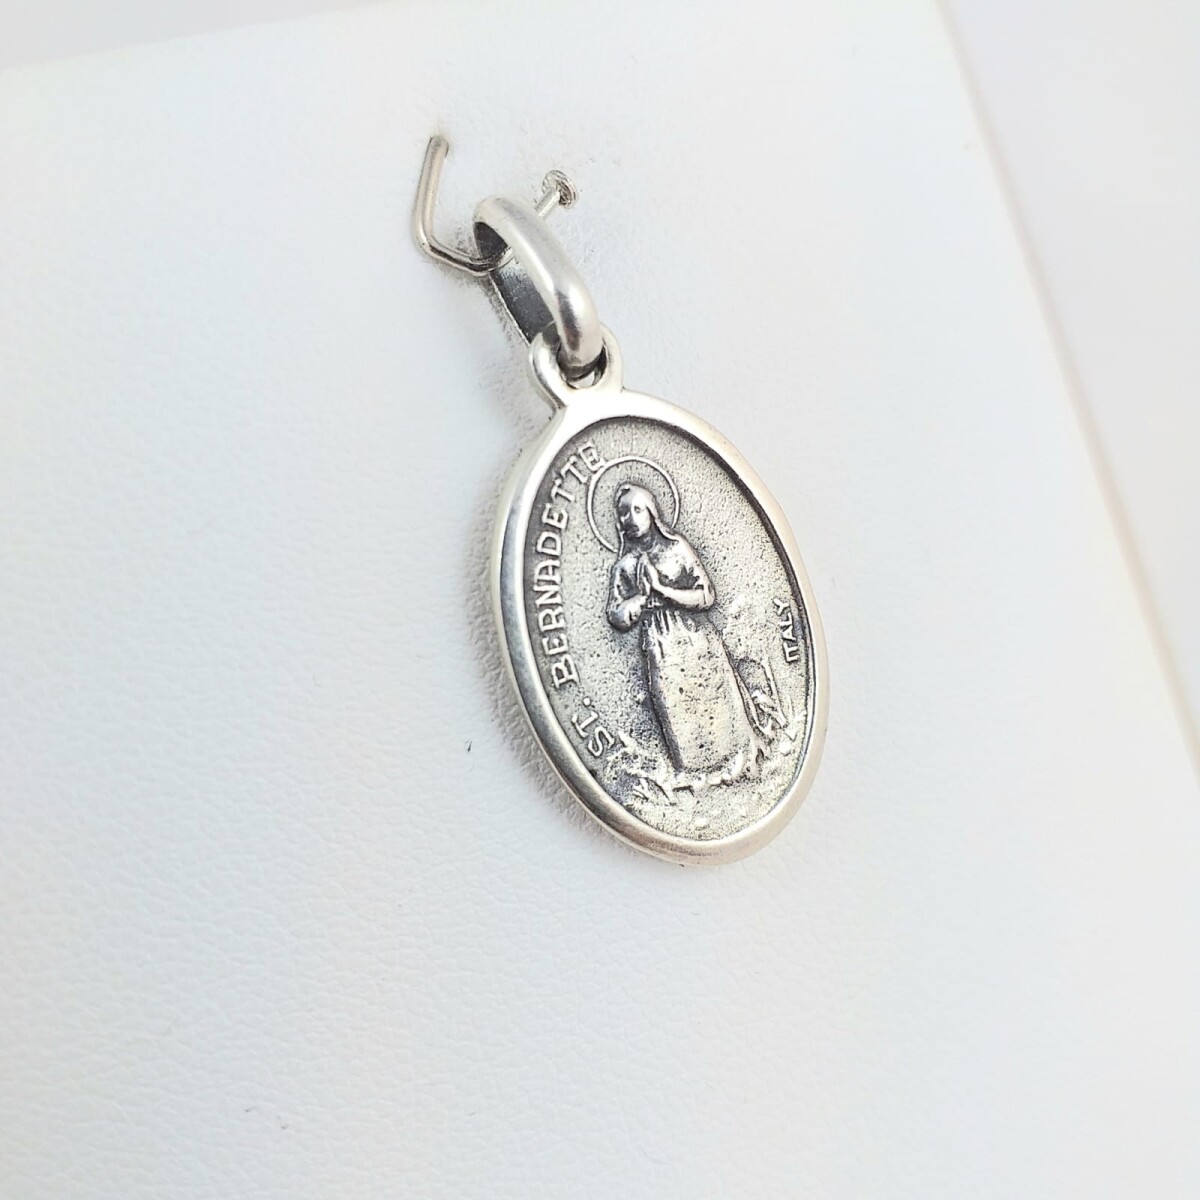 Medalla religiosa de plata 925, Santa Bernardita y Virgen Lourdes, medidas 21mm*15mm. 